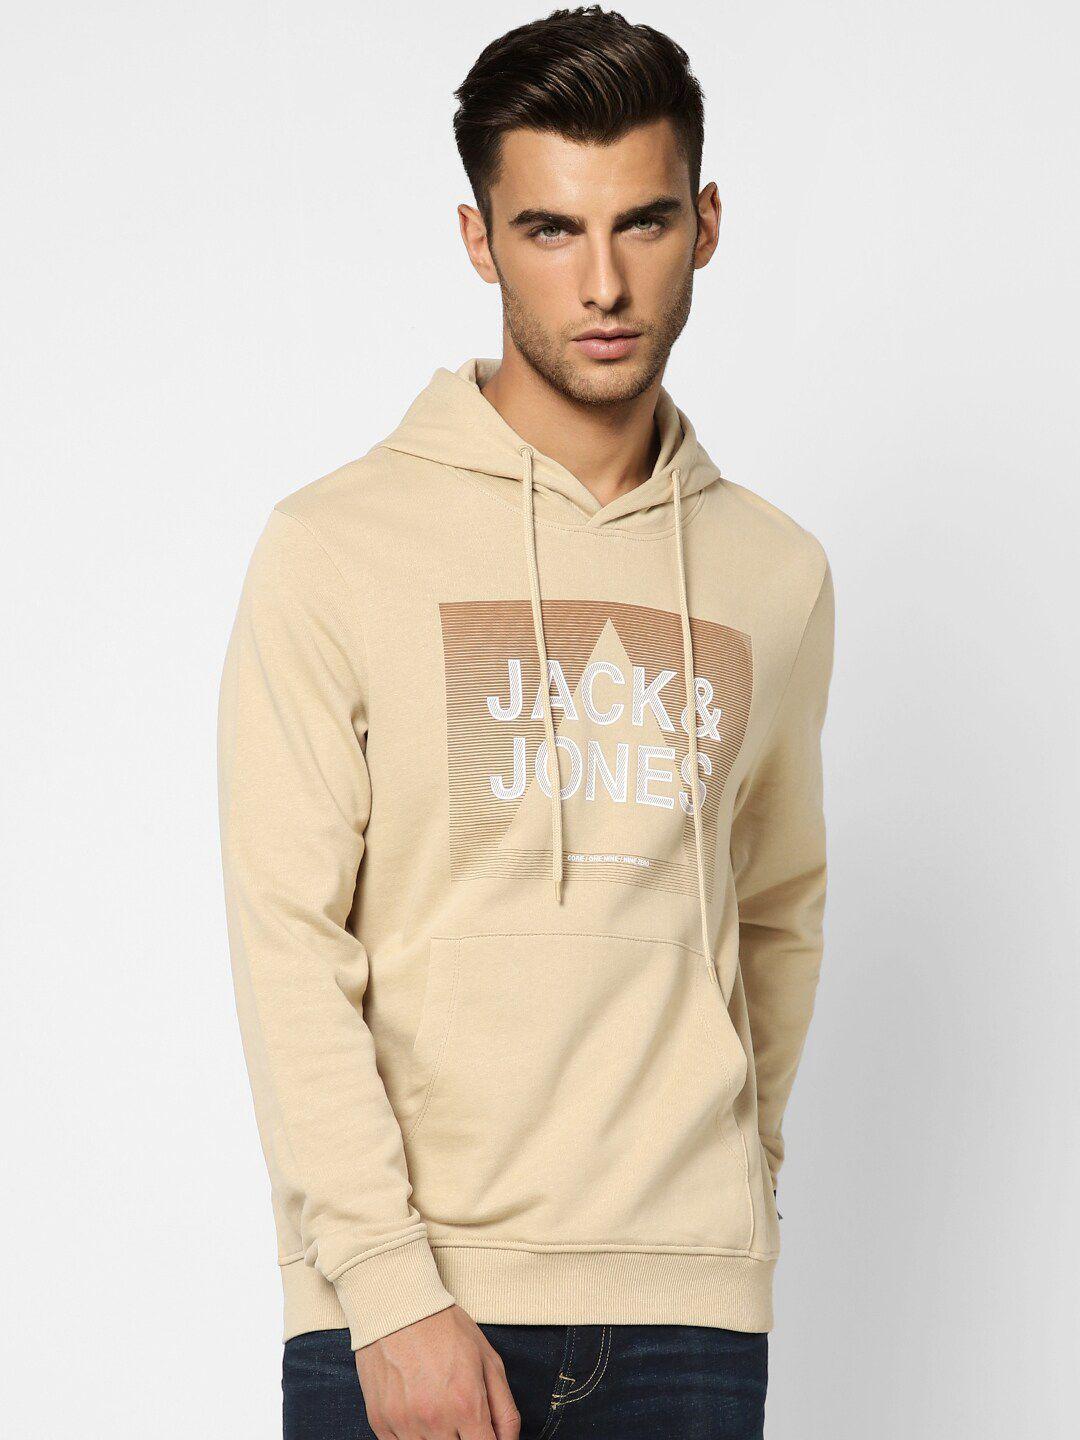 jack & jones men beige printed hooded cotton sweatshirt